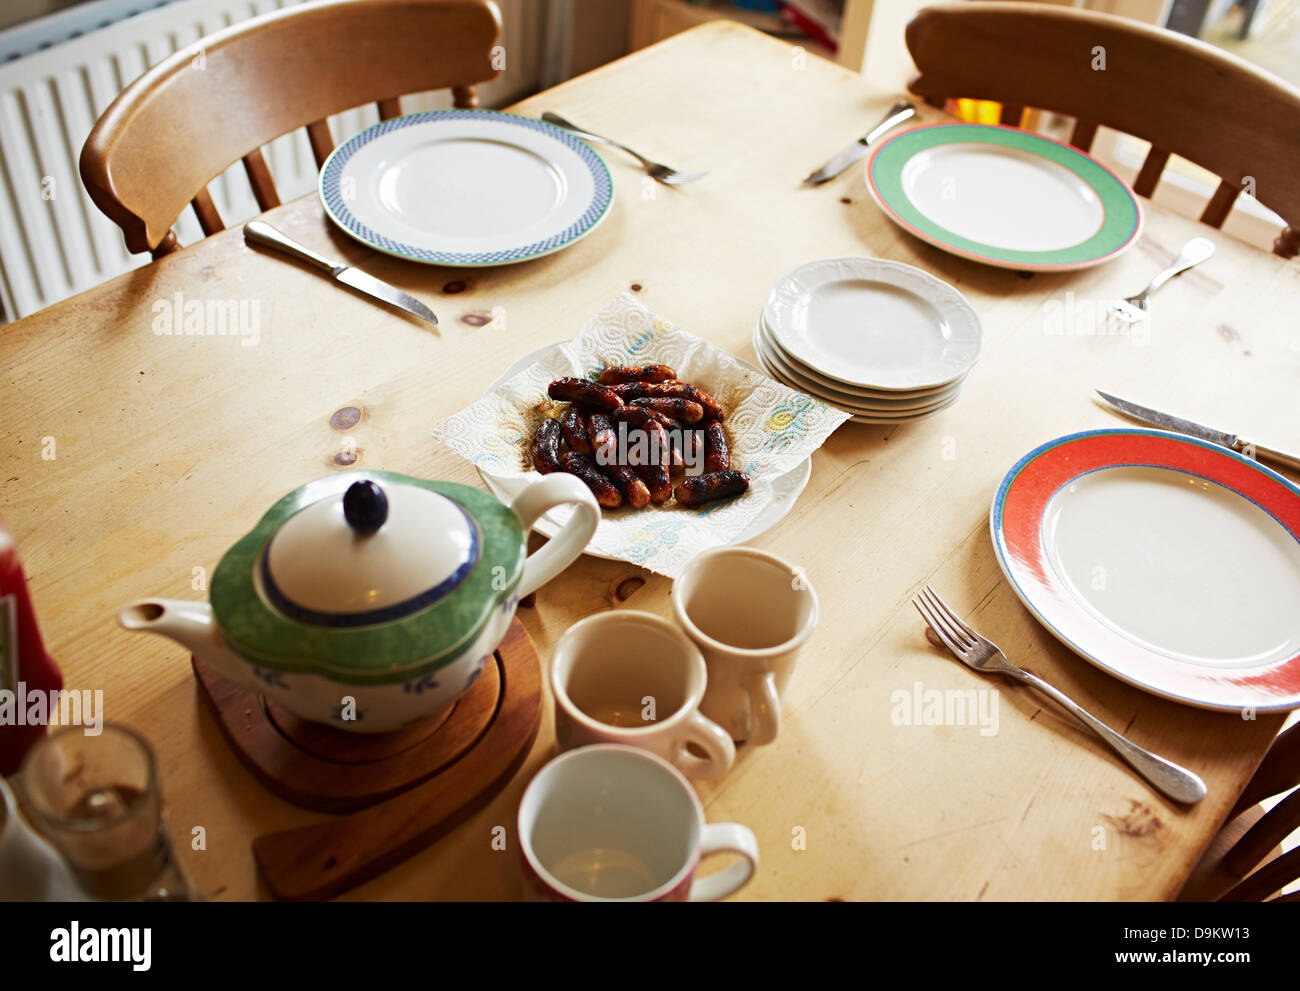 Teiera, tazze e piatti set su un tavolo di legno Foto Stock